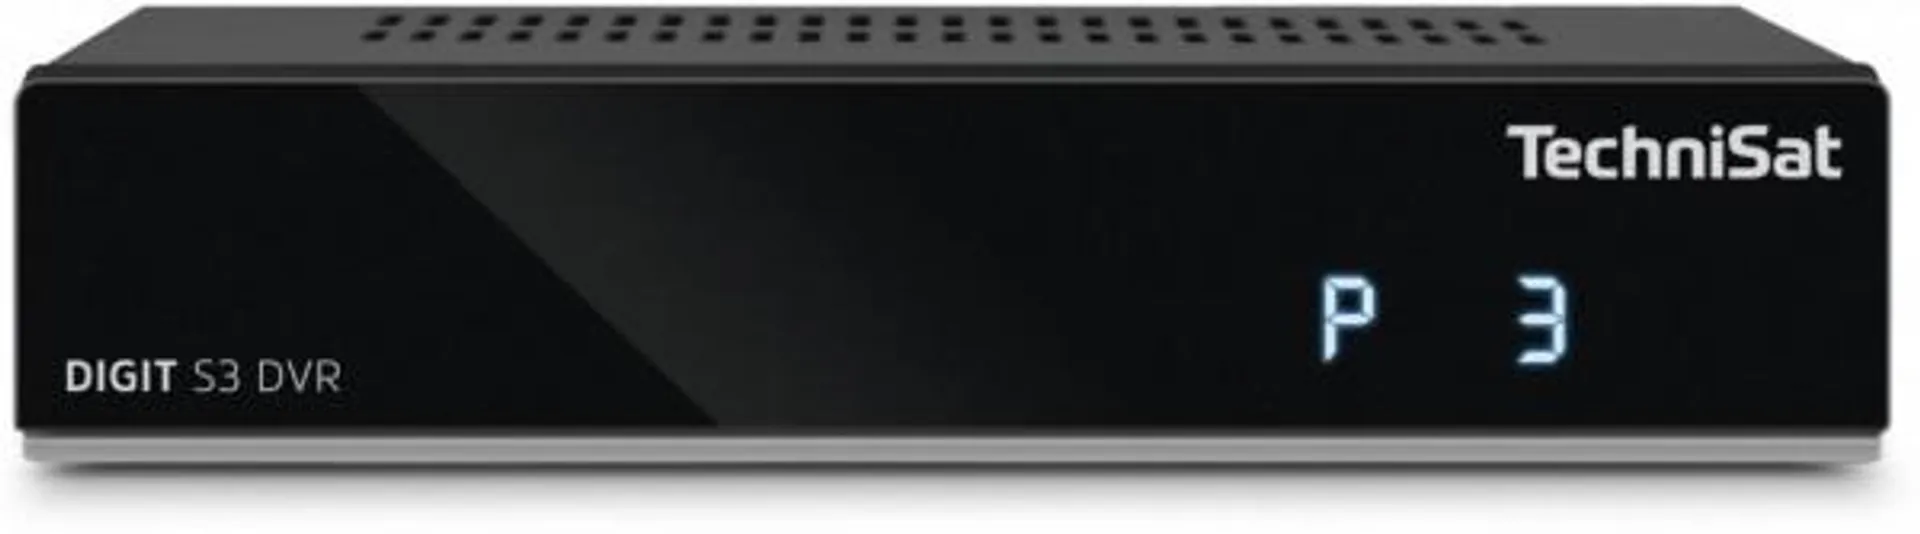 TechniSat Digit S3 DVR HDTV Sat-Receiver schwarz